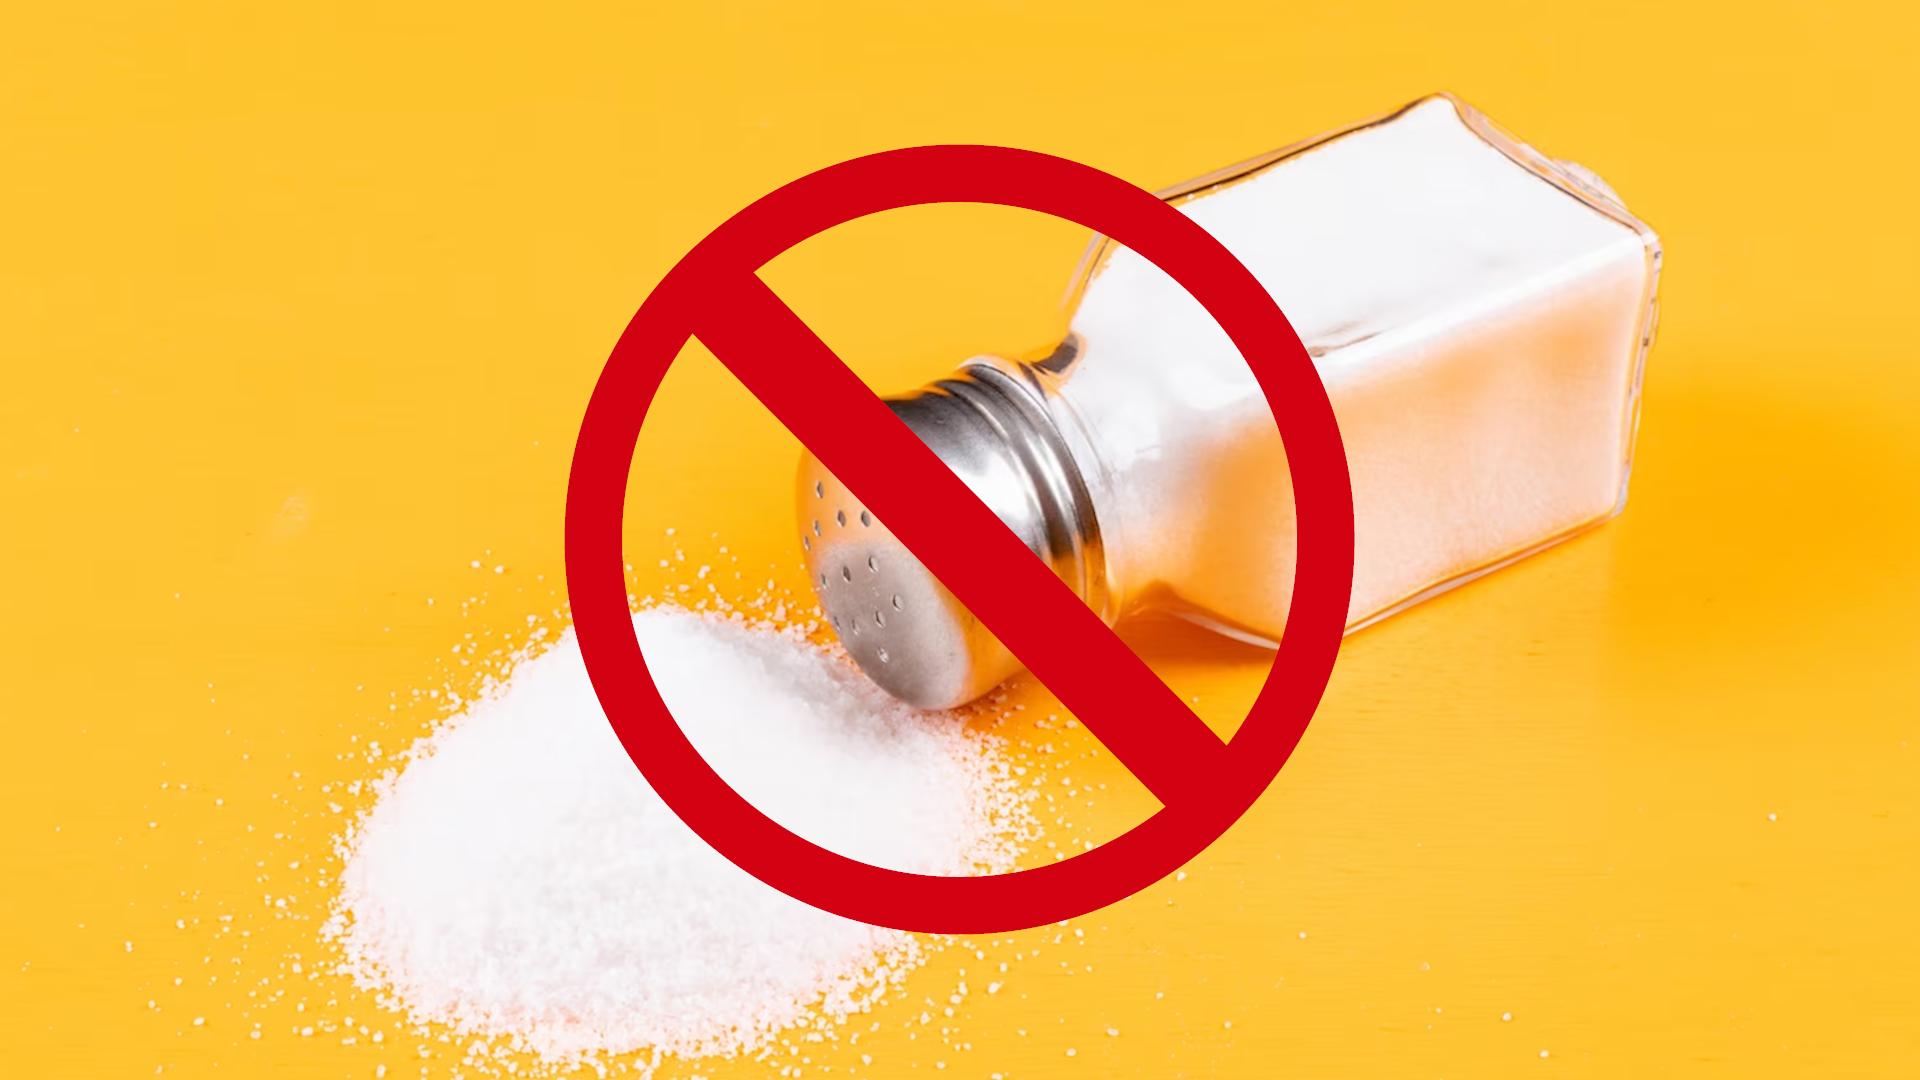 DASH ограничивает употребление соли